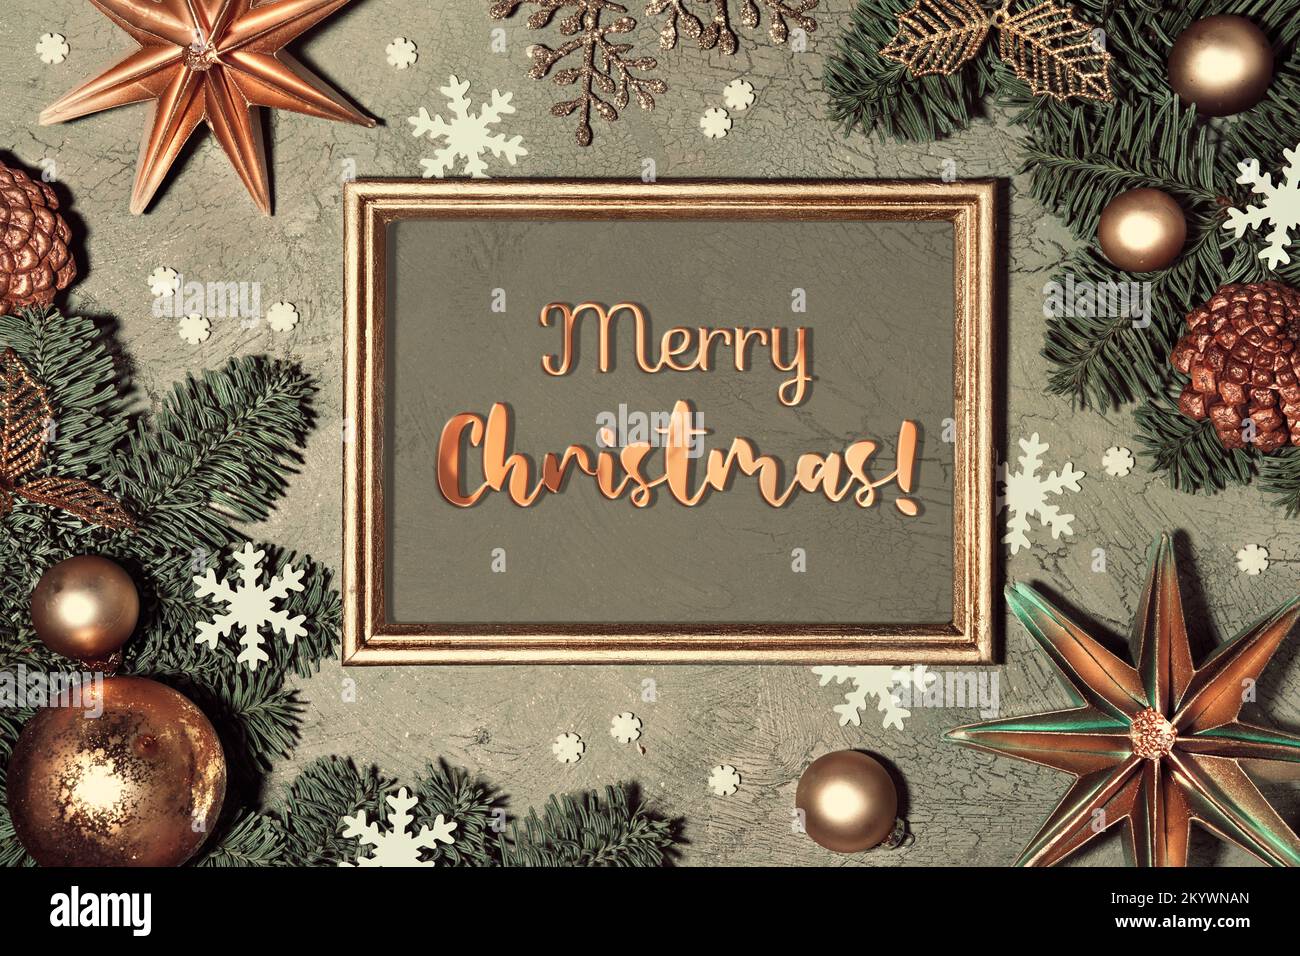 Hintergrund zu Weihnachten. Flach liegend mit Tannenzweigen dekoriert mit roten Rowan-Beeren, Papiersternen und Schneeflocken auf grauem, strukturiertem Hintergrund. Grußtext Stockfoto